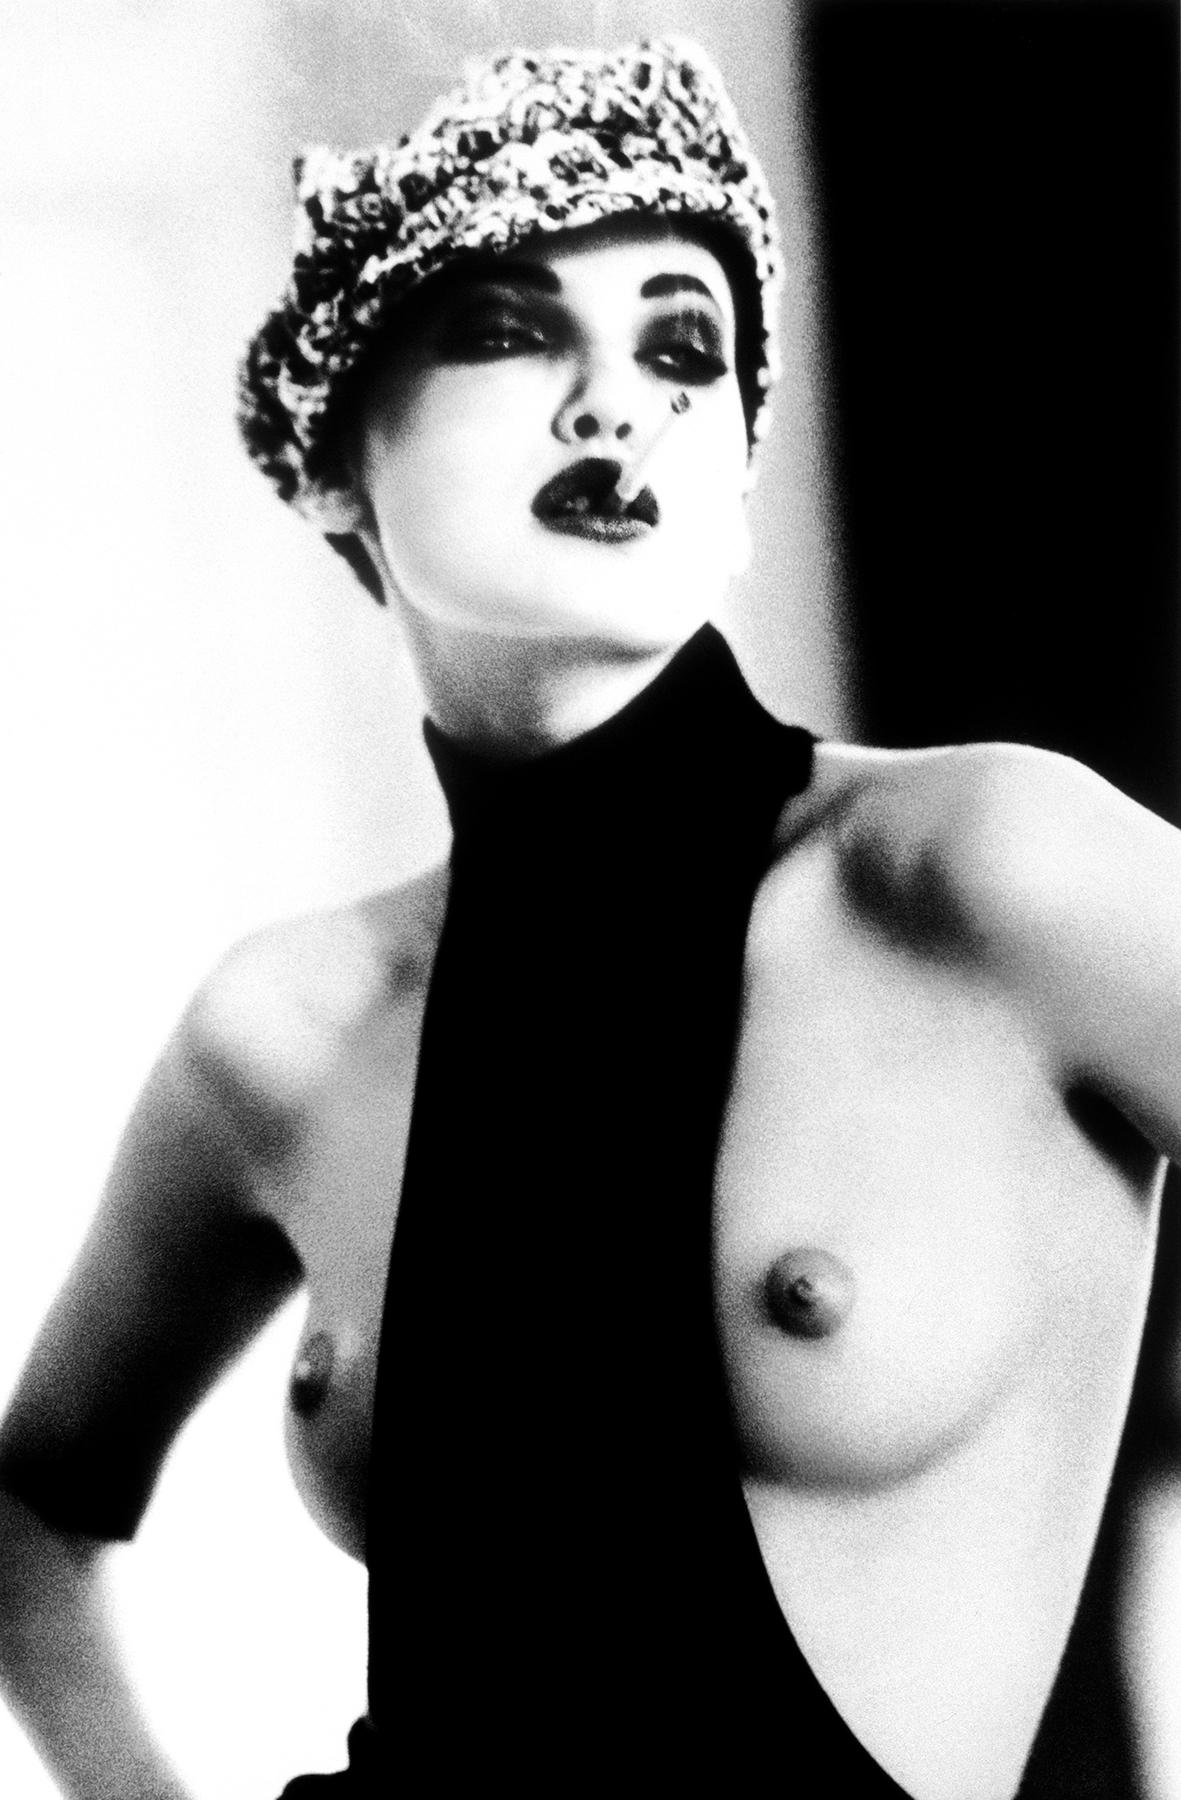 Ellen von Unwerth Nude Photograph - La Garçonne, Nadja Auermann, Paris